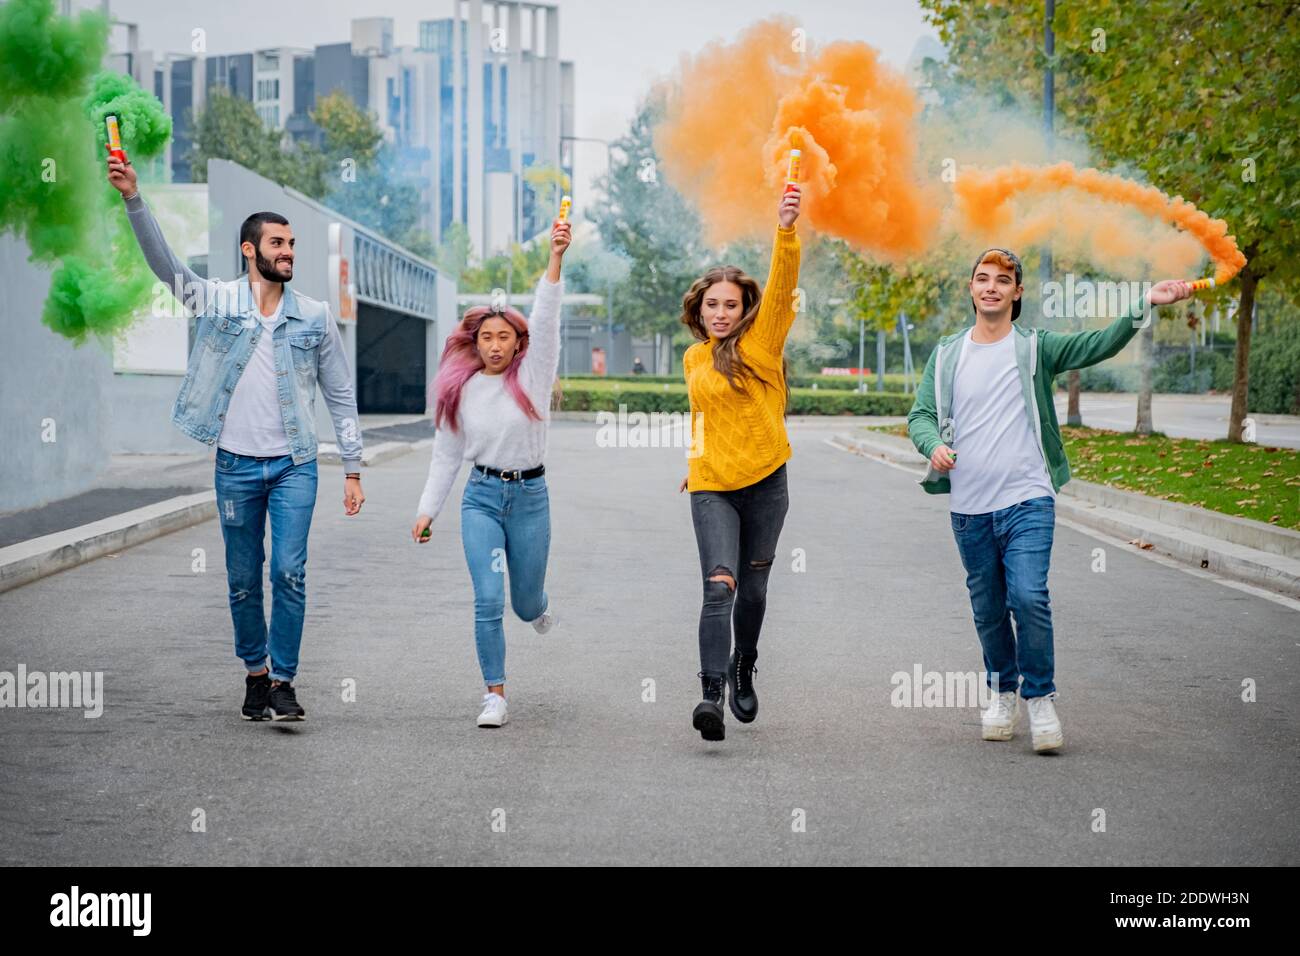 De beaux jeunes gens se tiennent dans la rue et tiennent la lumière de couleur Bombes de fumée - des amis heureux s'amuser dans la rue avec des bombes de fumée multicolores Banque D'Images